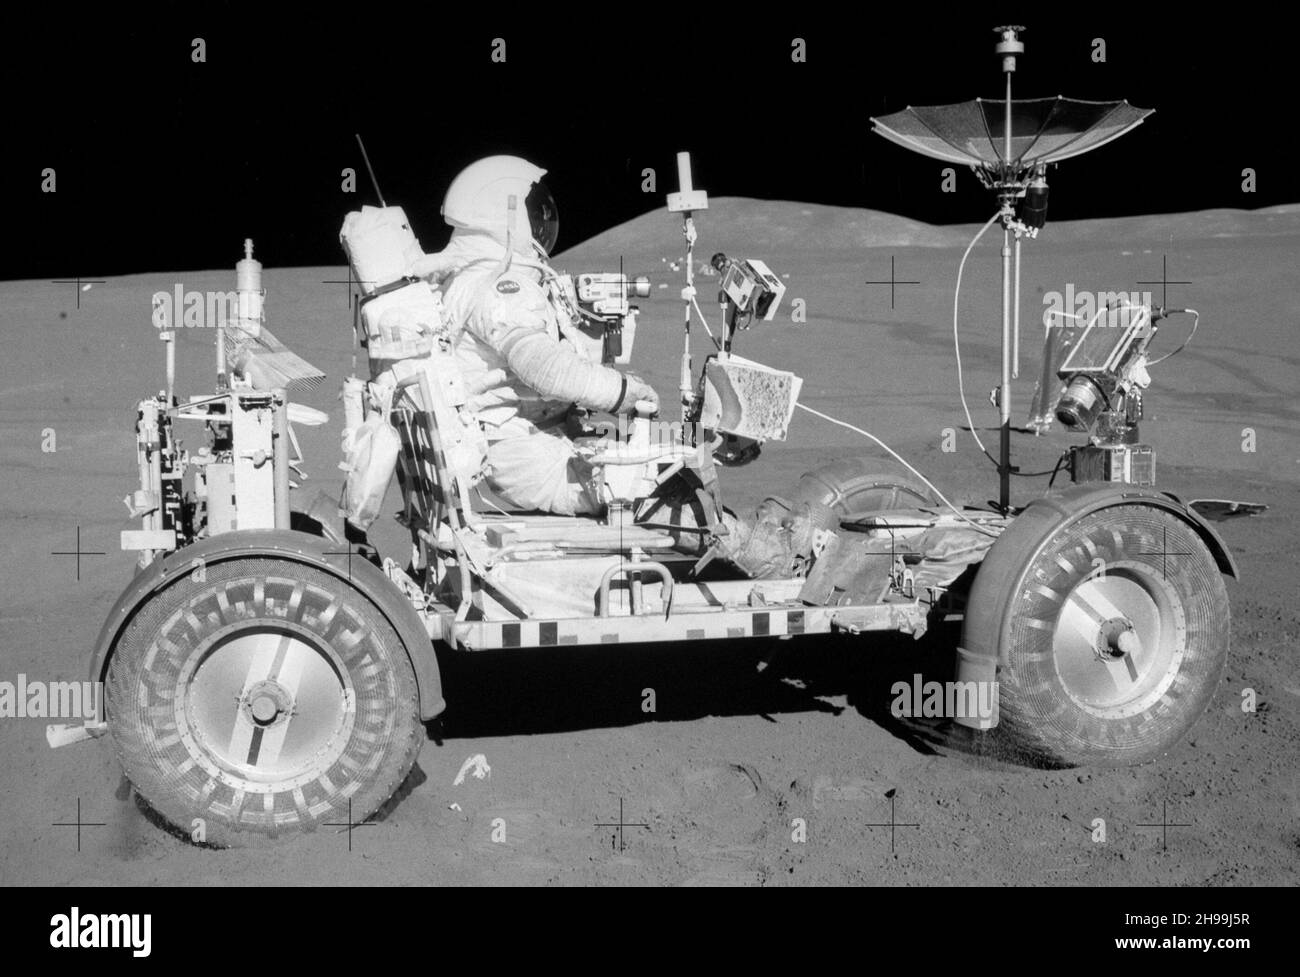 El Comandante del Apolo 15 David Scott conduce el vehículo lunar itinerante en la superficie de la Luna, la primera vez que se utilizó el vehículo móvil. Foto de stock